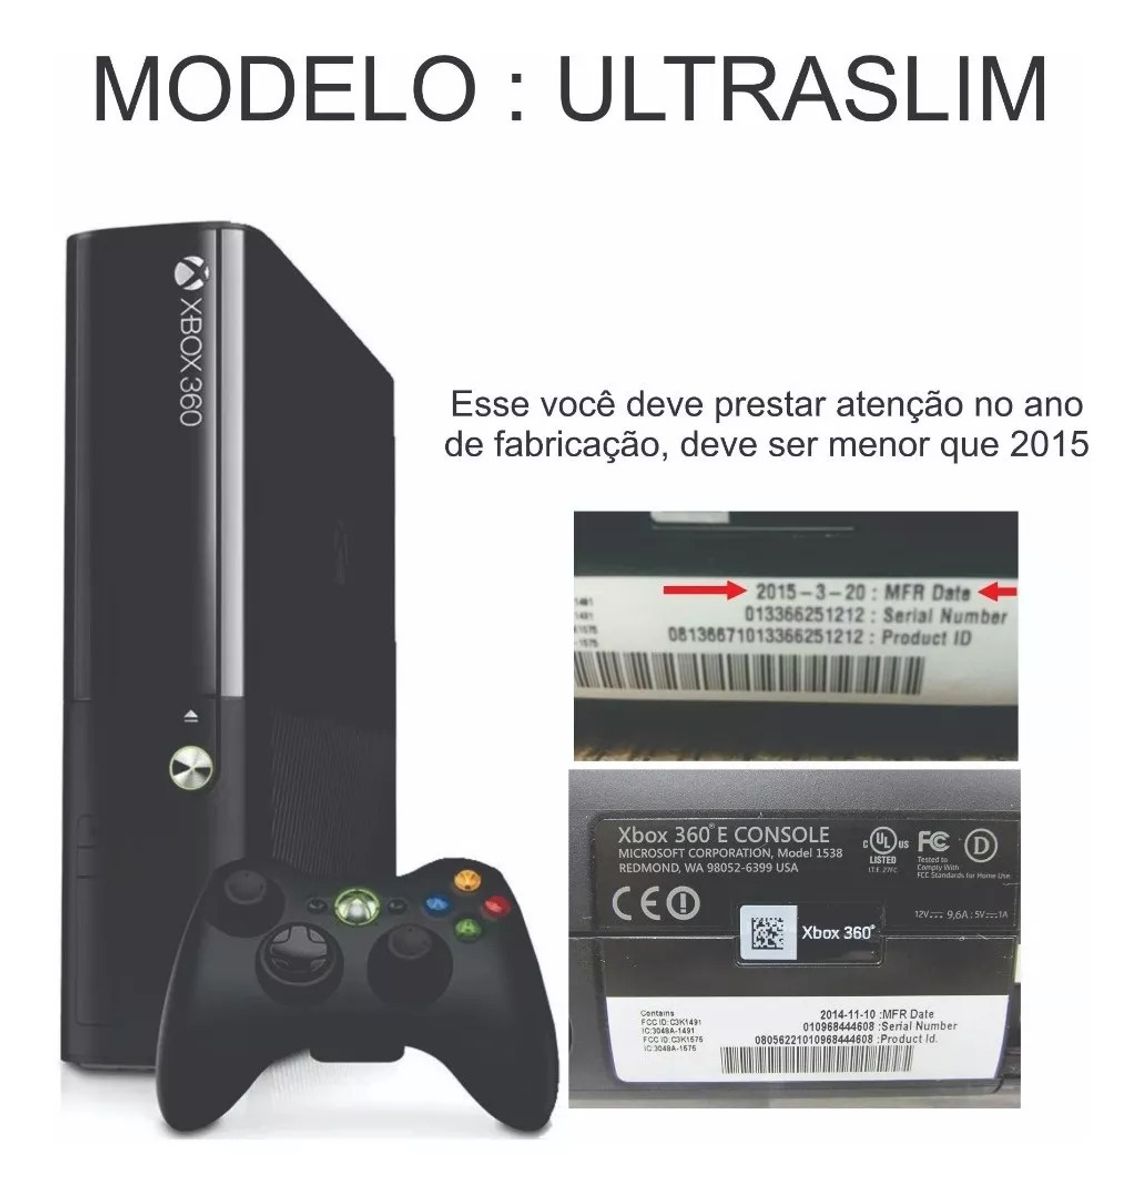 – Compre Jogos Xbox 360 Desbloqueados, RGH ,LT 3.0